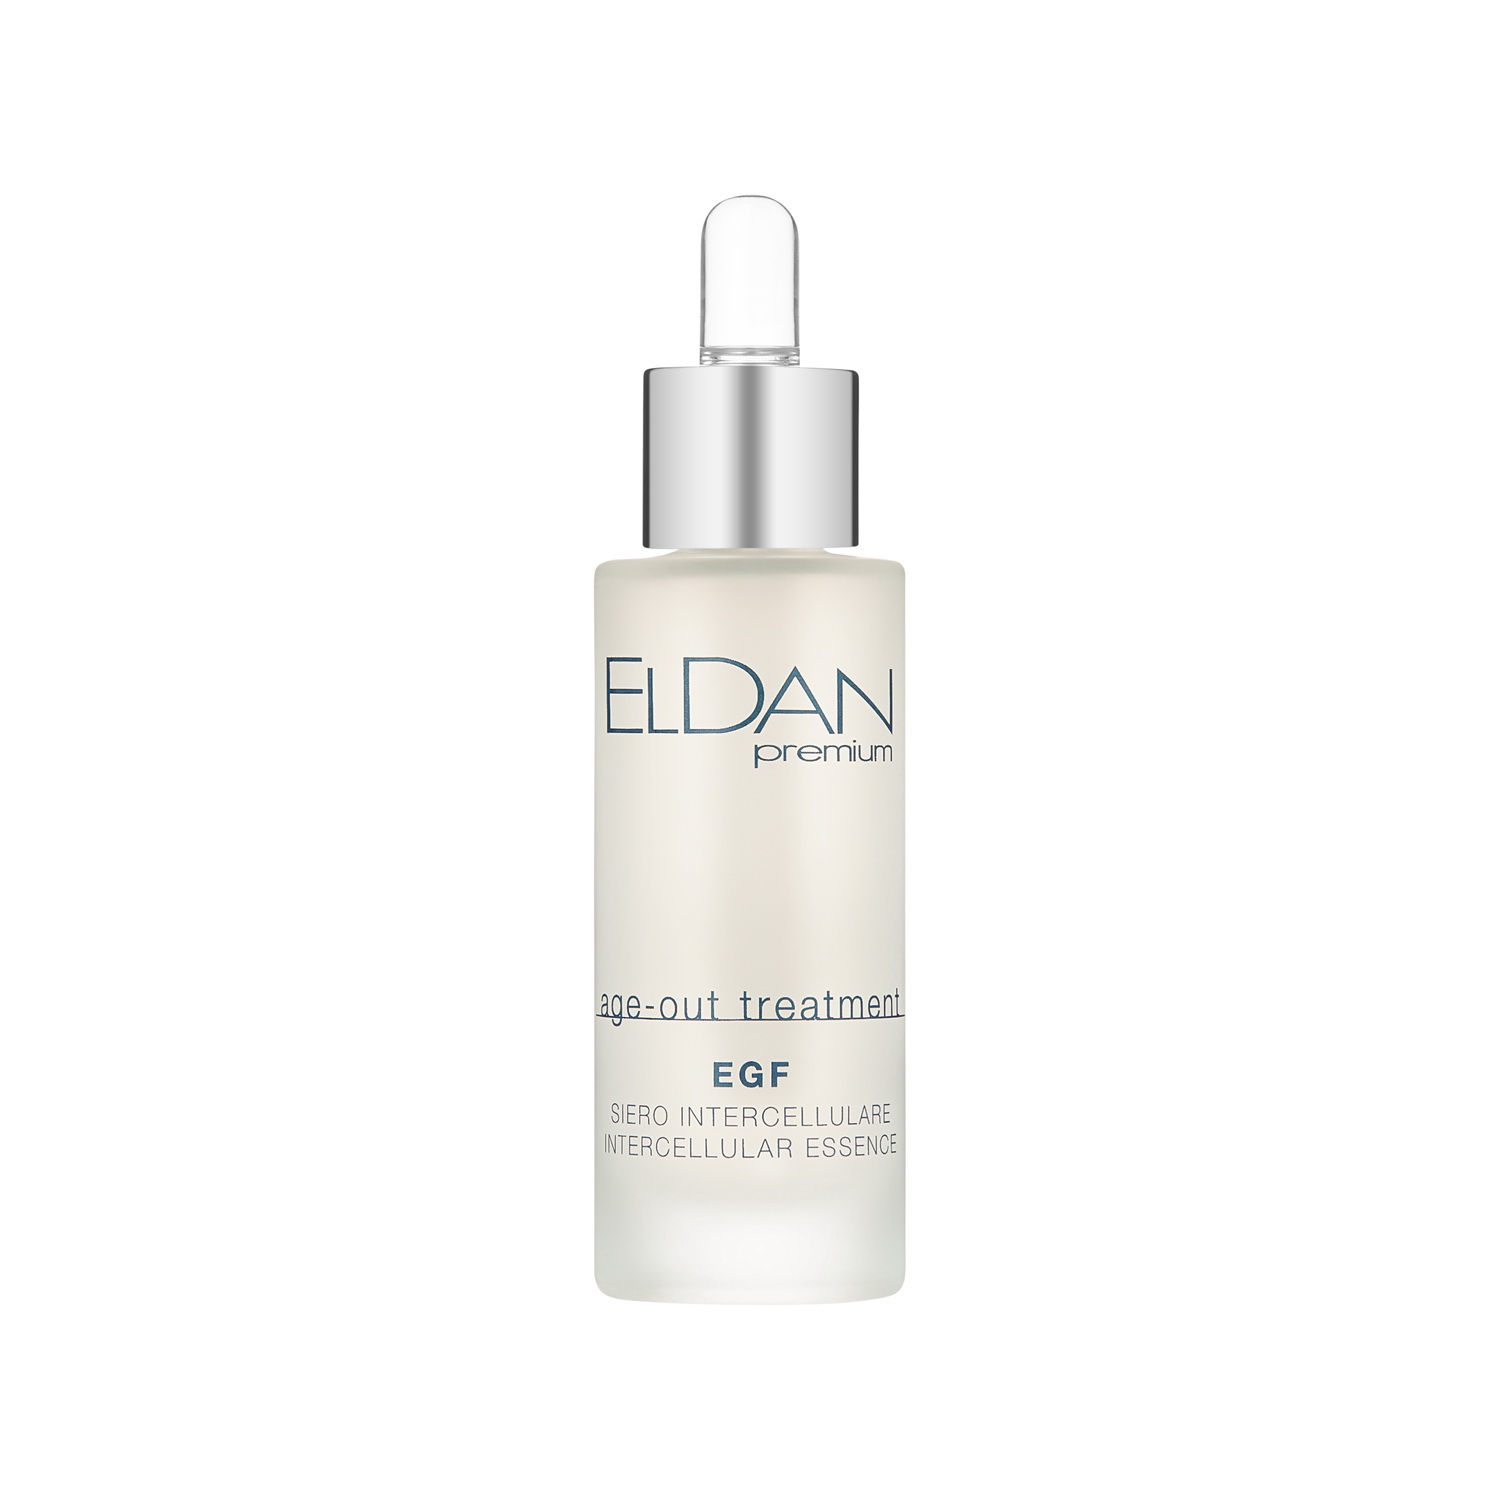 Сыворотка для лица Eldan Cosmetics EGF Intercellular Essence регенерирующая, 30 мл возле тьмы чужой